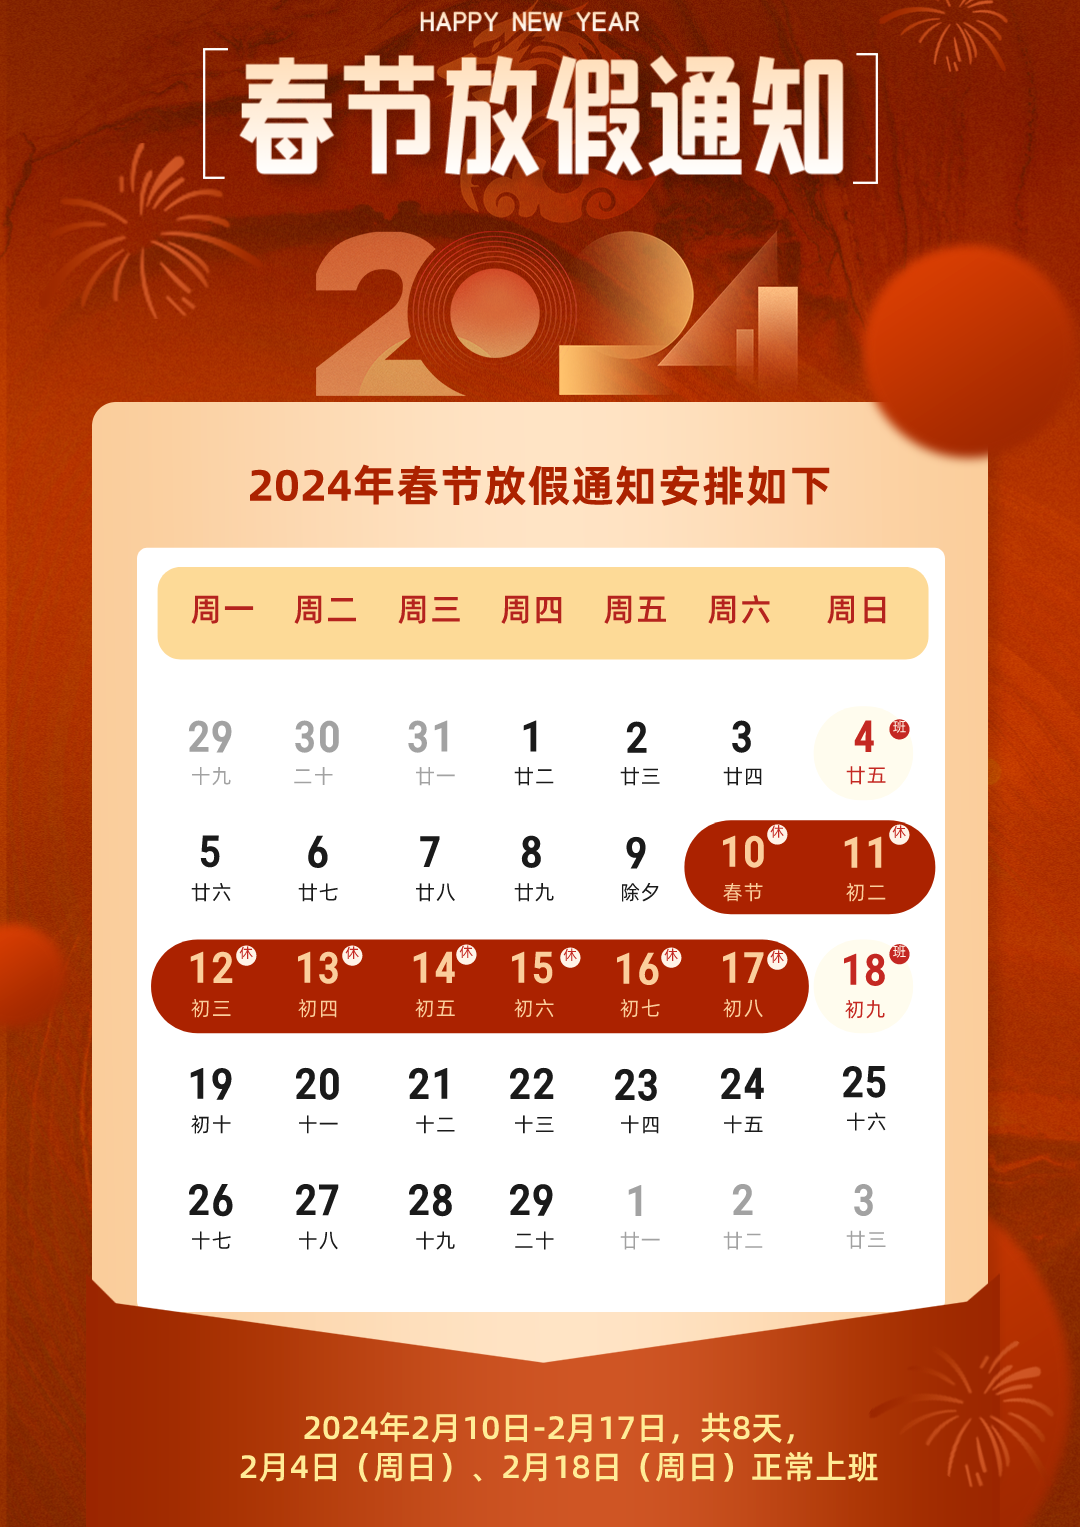 关于 2024 年春节假期安排的通知